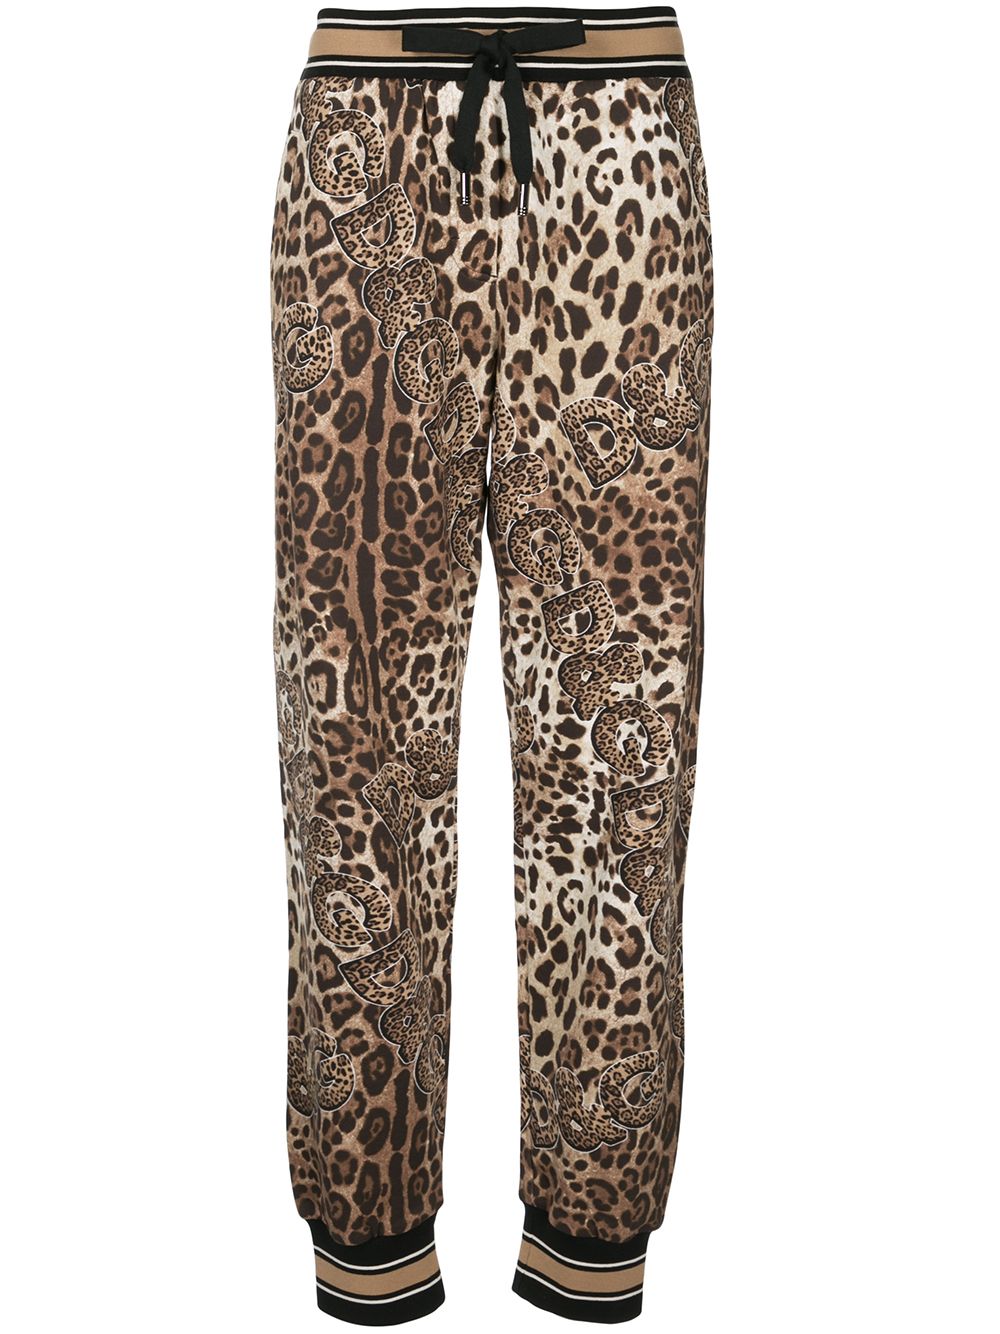 Штаны дольче габбана. Брюки брюки Дольче Габбана. Леопардовые брюки Dolce Gabbana. Дольче Габбана леопард. Леопардовый костюм Дольче Габбана.